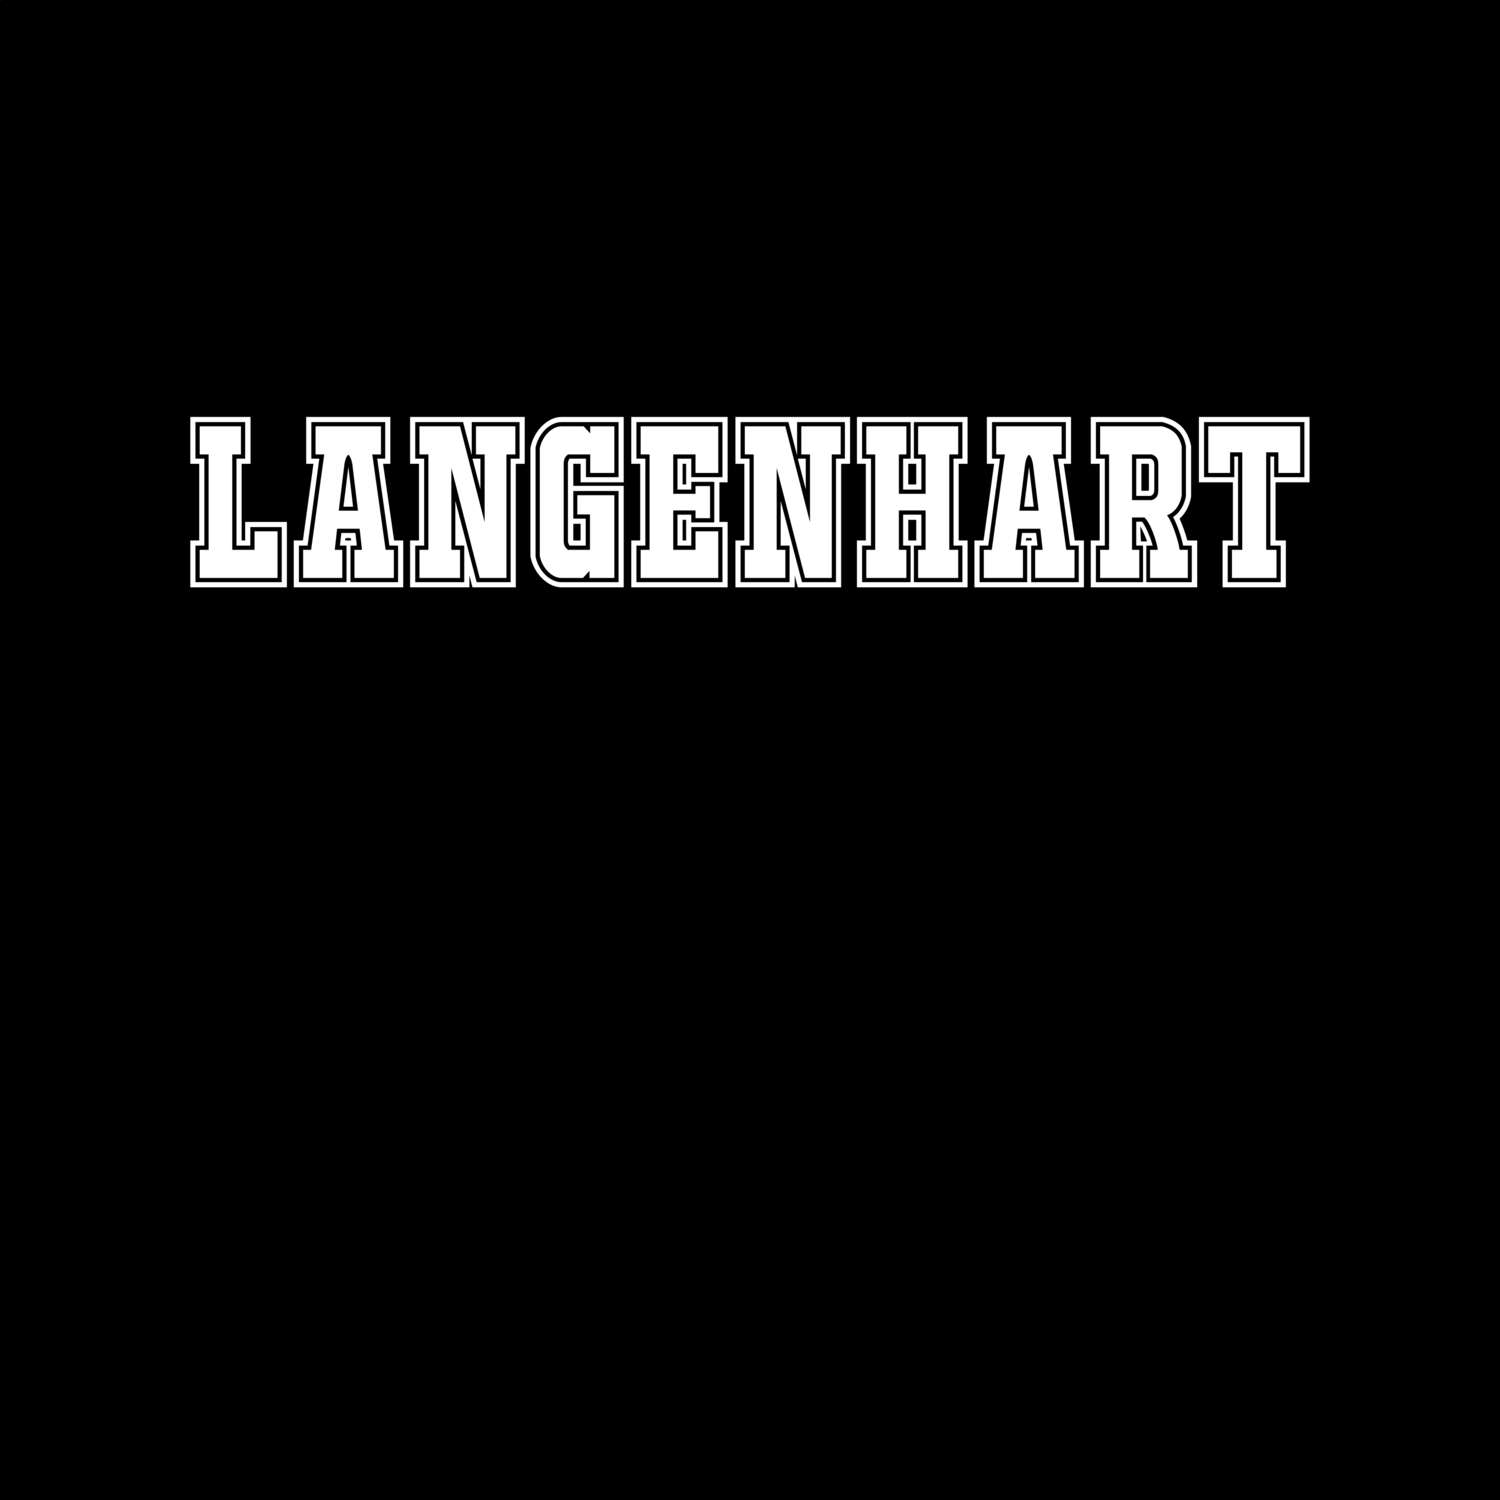 Langenhart T-Shirt »Classic«